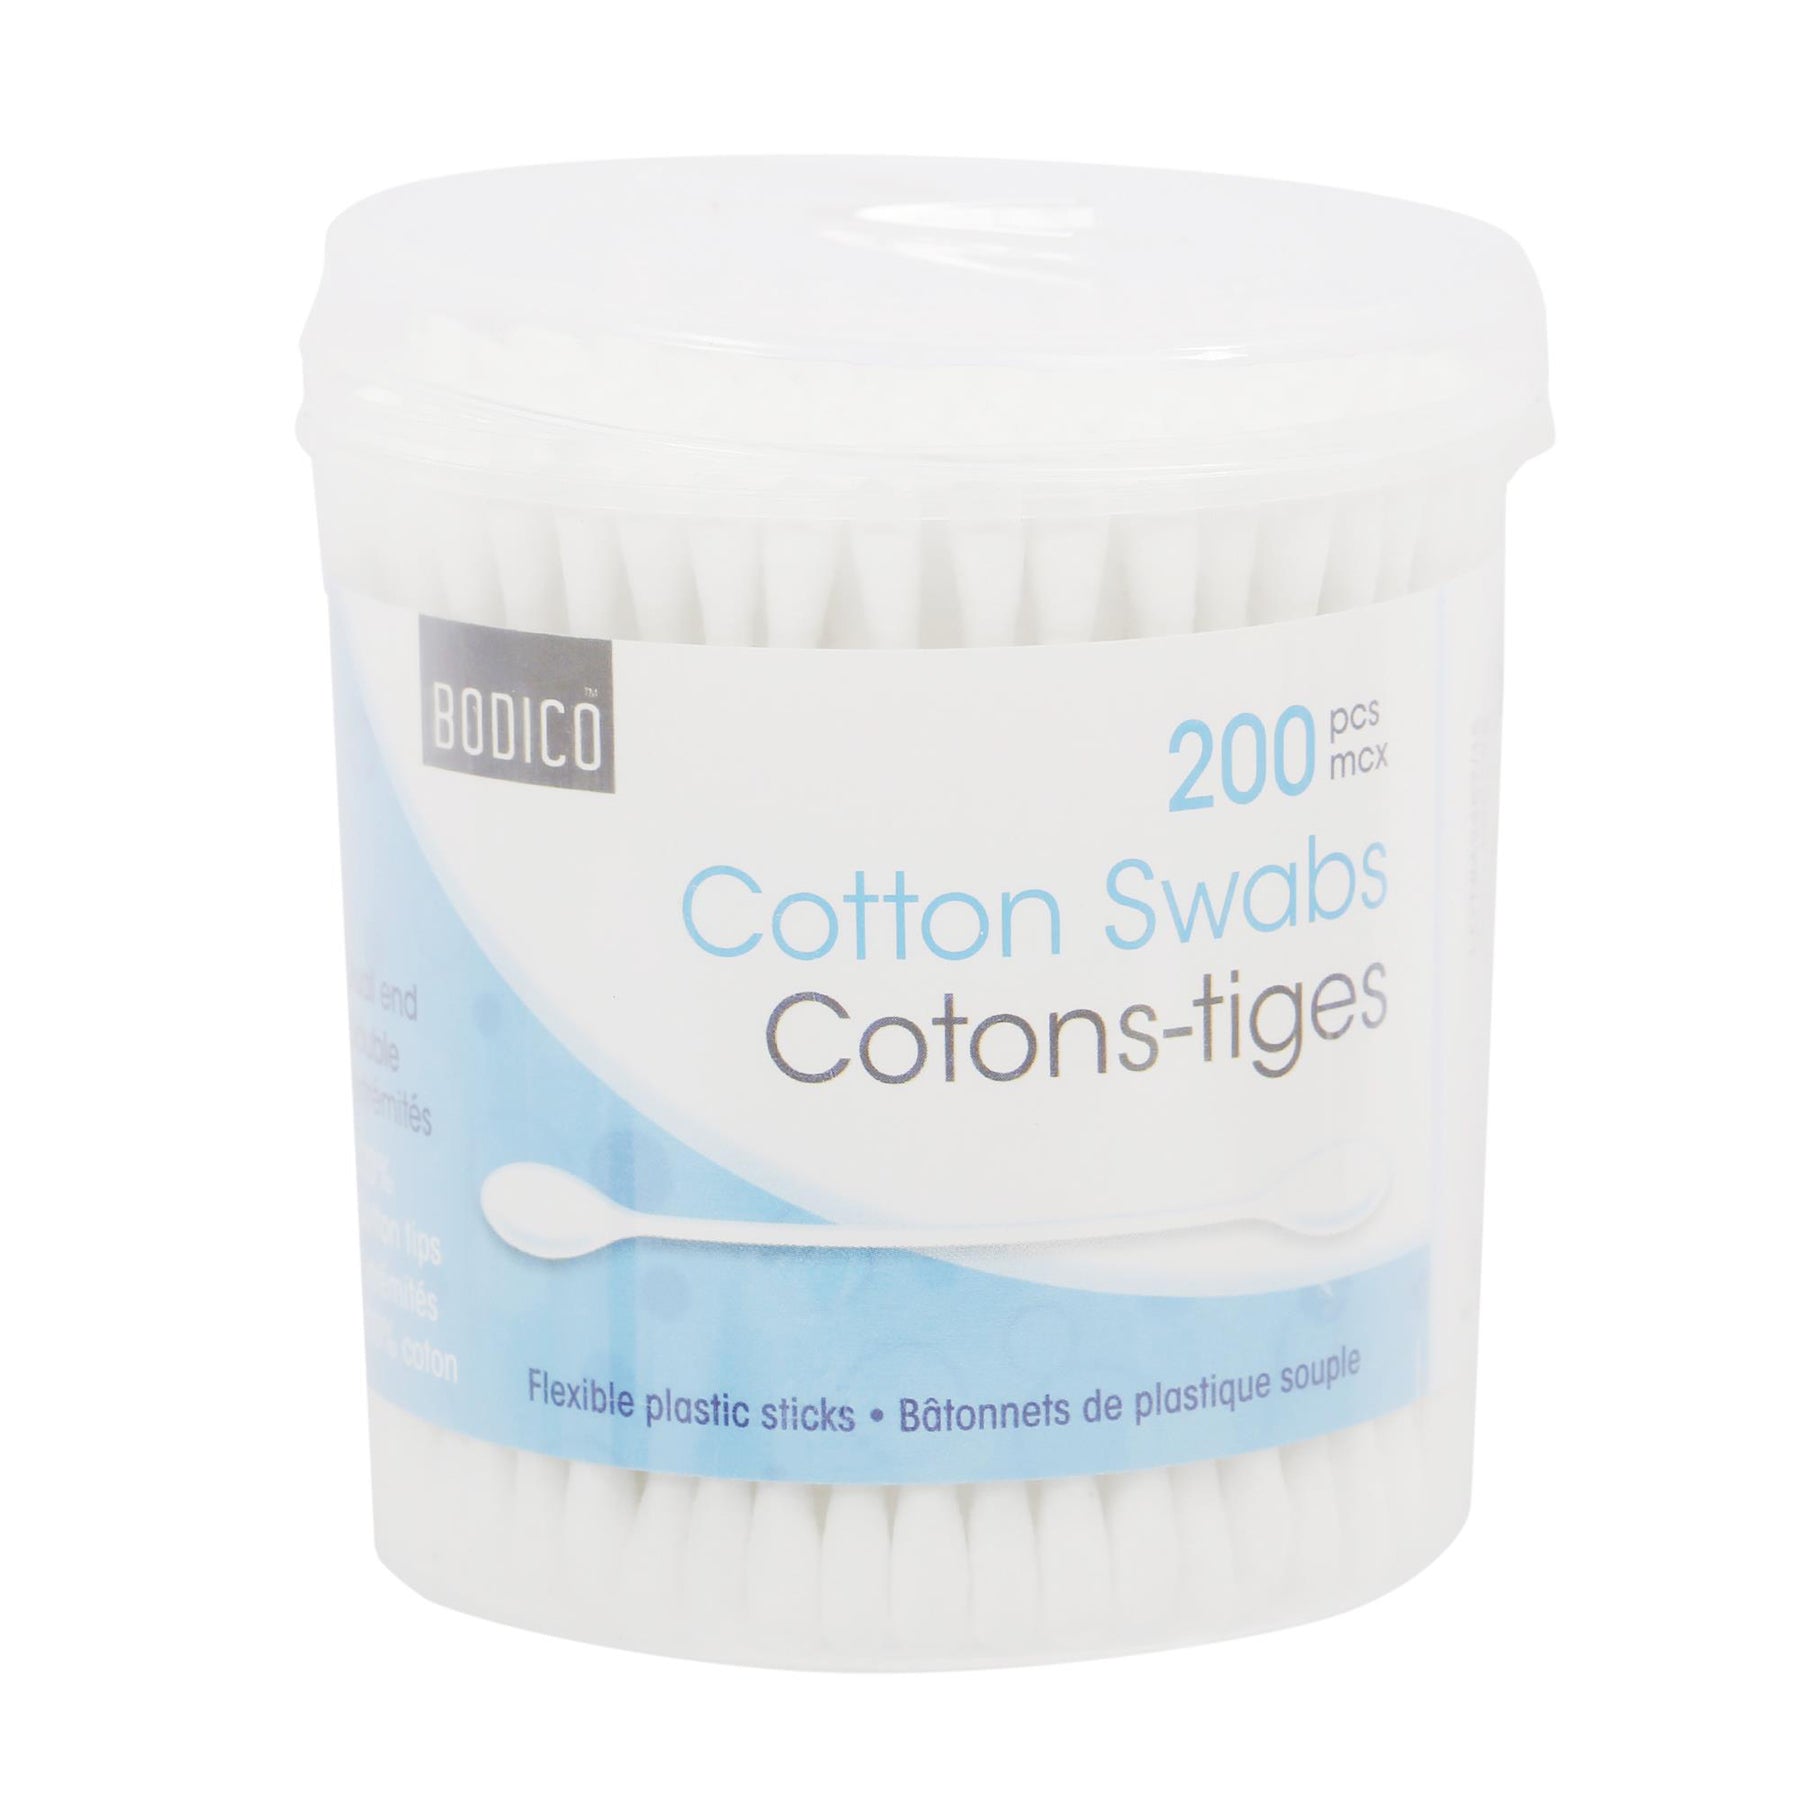 Bodico 200 Cotton Swabs in Pvc Box